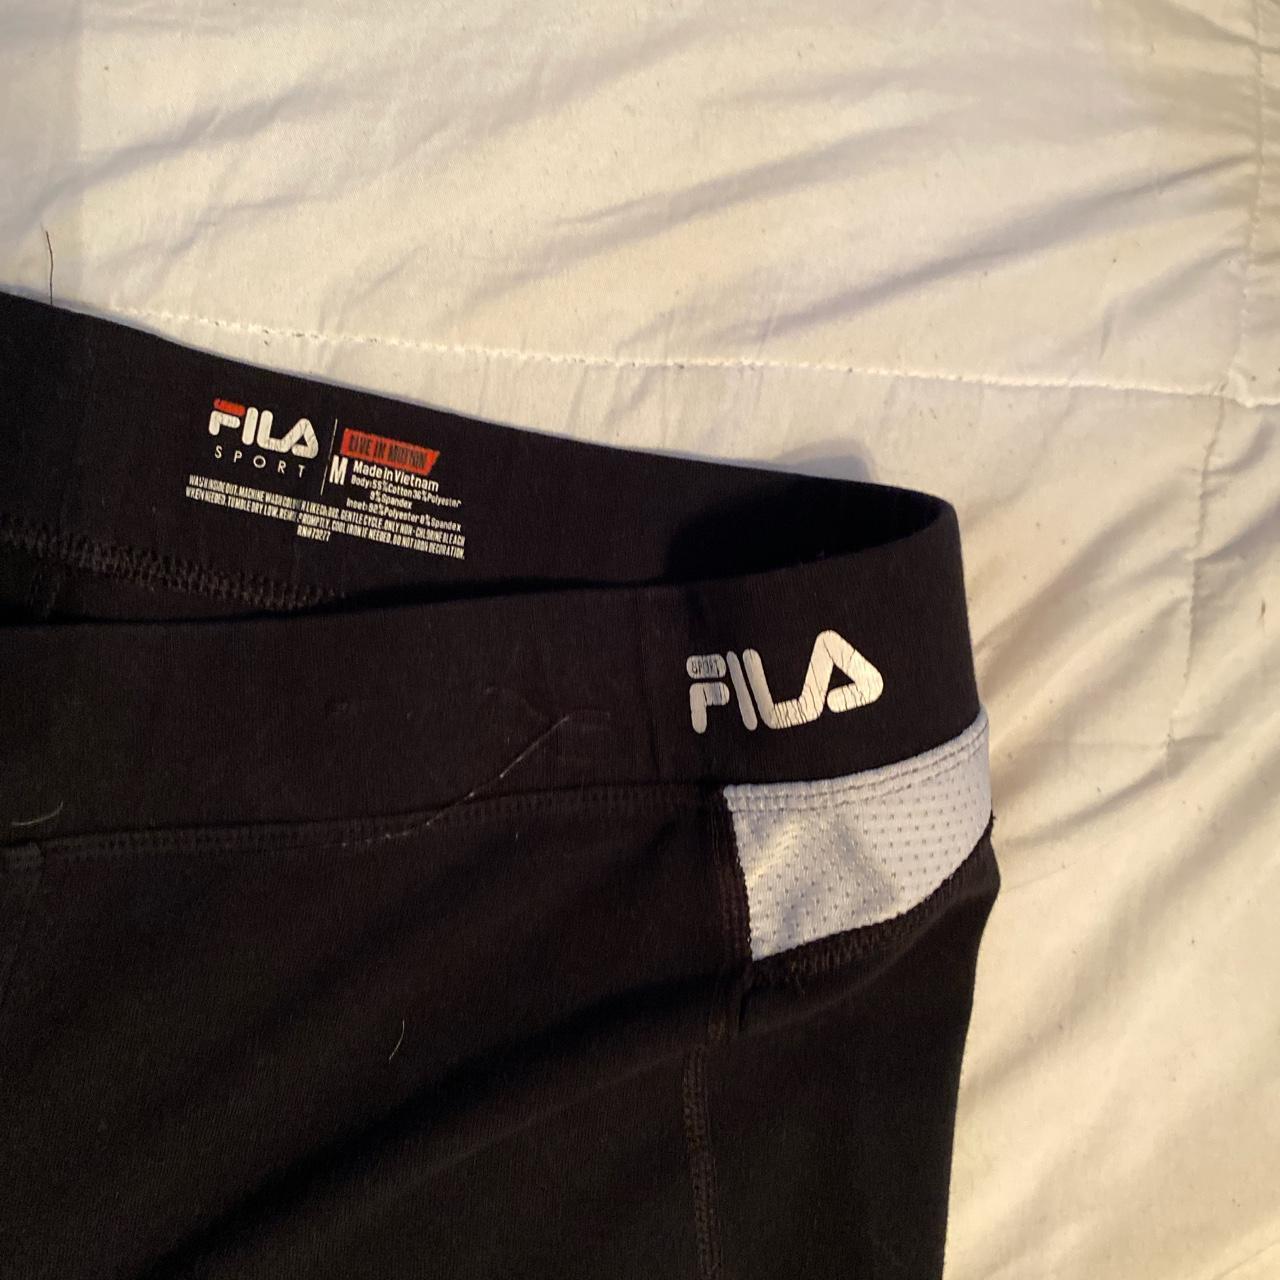 2000s Fila women’s leggings (flared), these will make